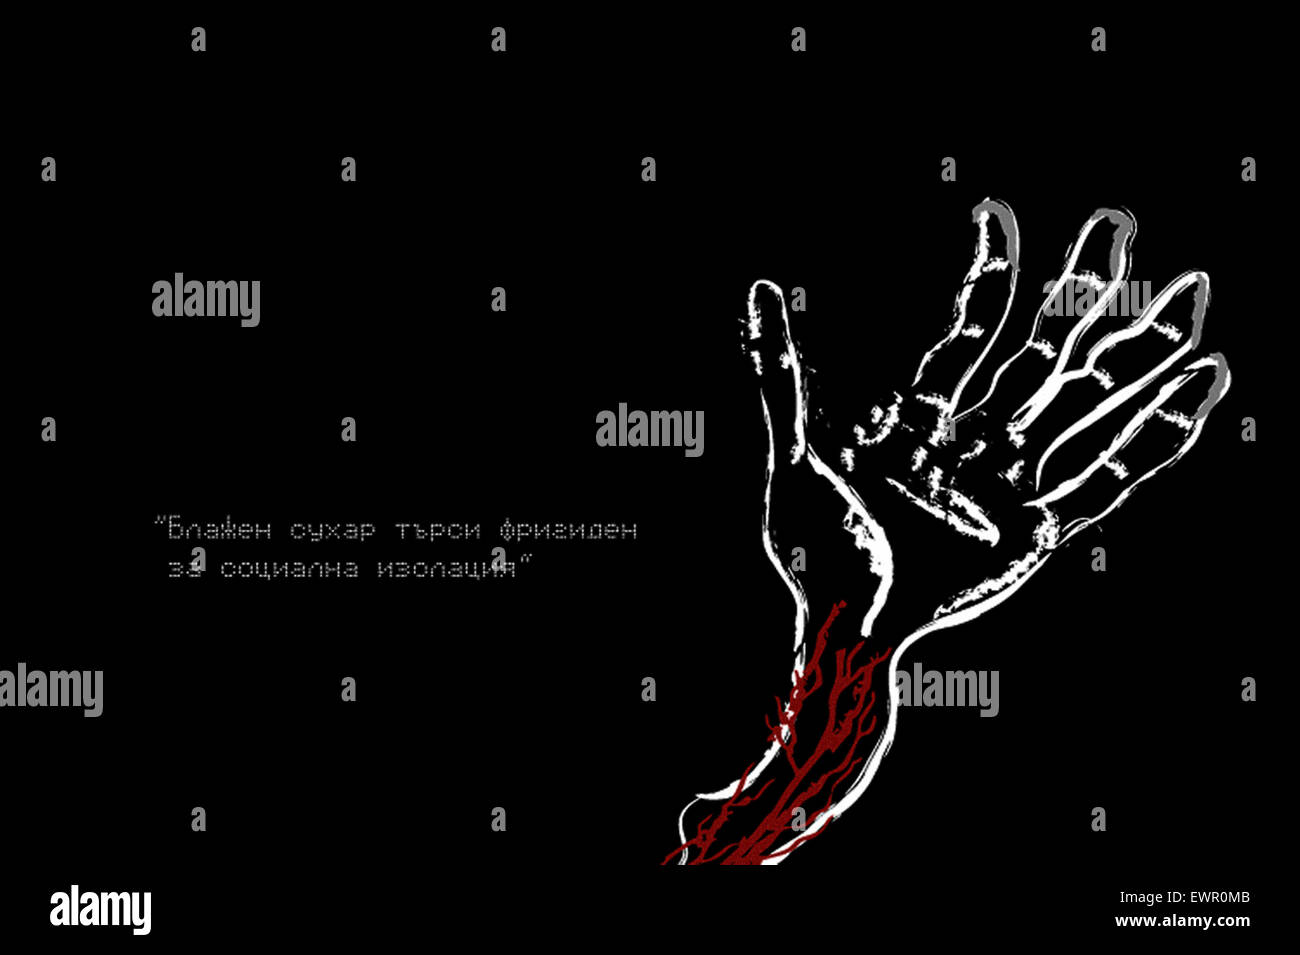 "Kennen zu lernen, nicht zu lieben" Postkarte aus der bulgarischen nationalen Drogen und Alkohol-Hotline und Website veröffentlichten im Jahr 2009. Siehe Beschreibung für mehr Informationen. Stockfoto